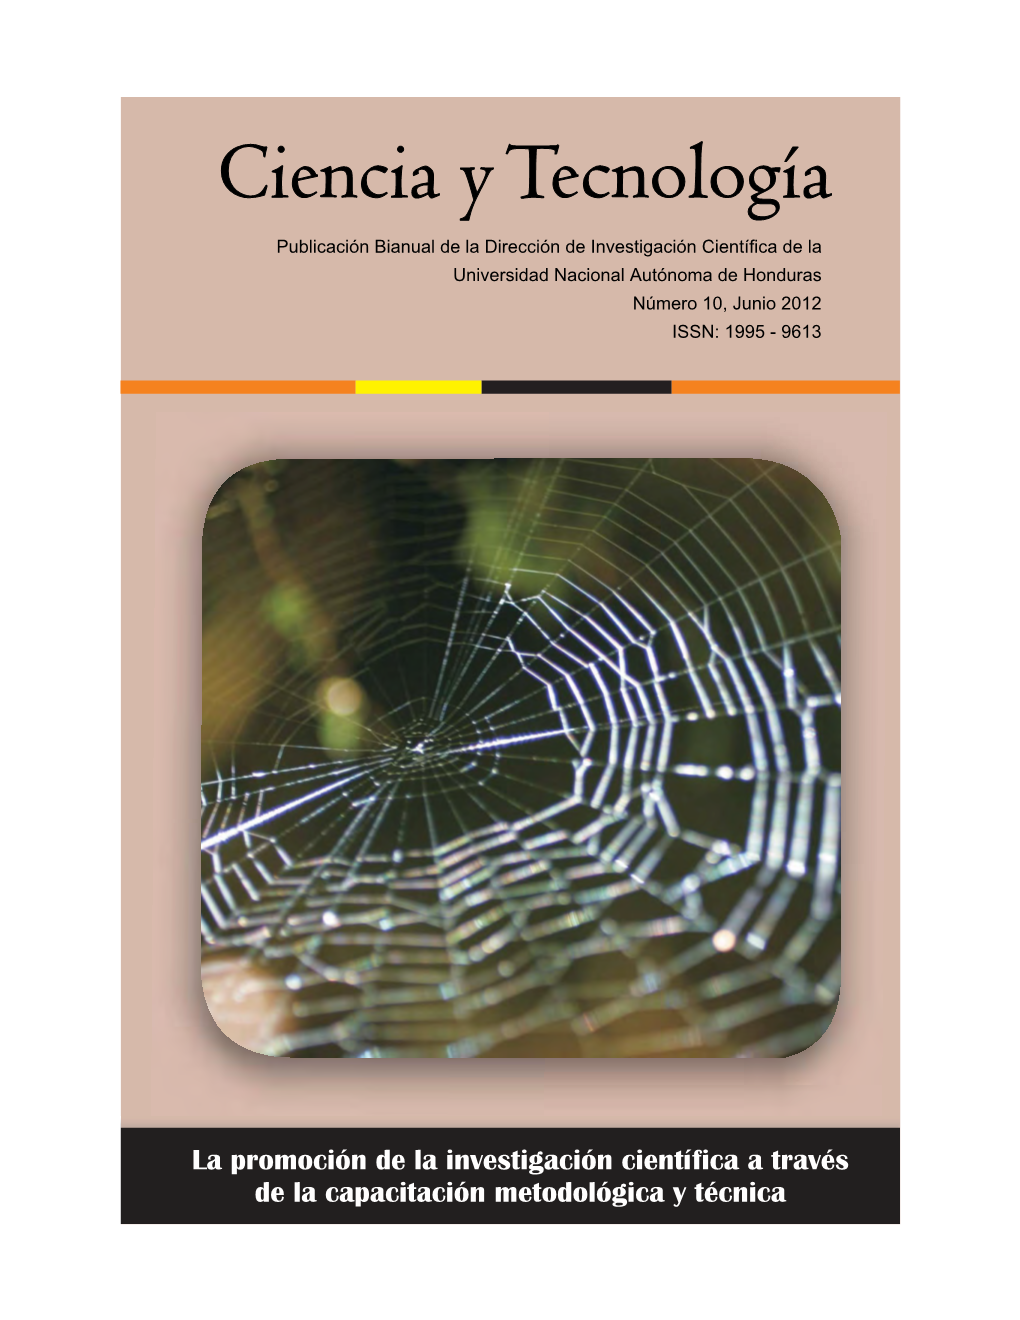 Revista Ciencia Y Tecnología No. 10 Parte I.Cdr